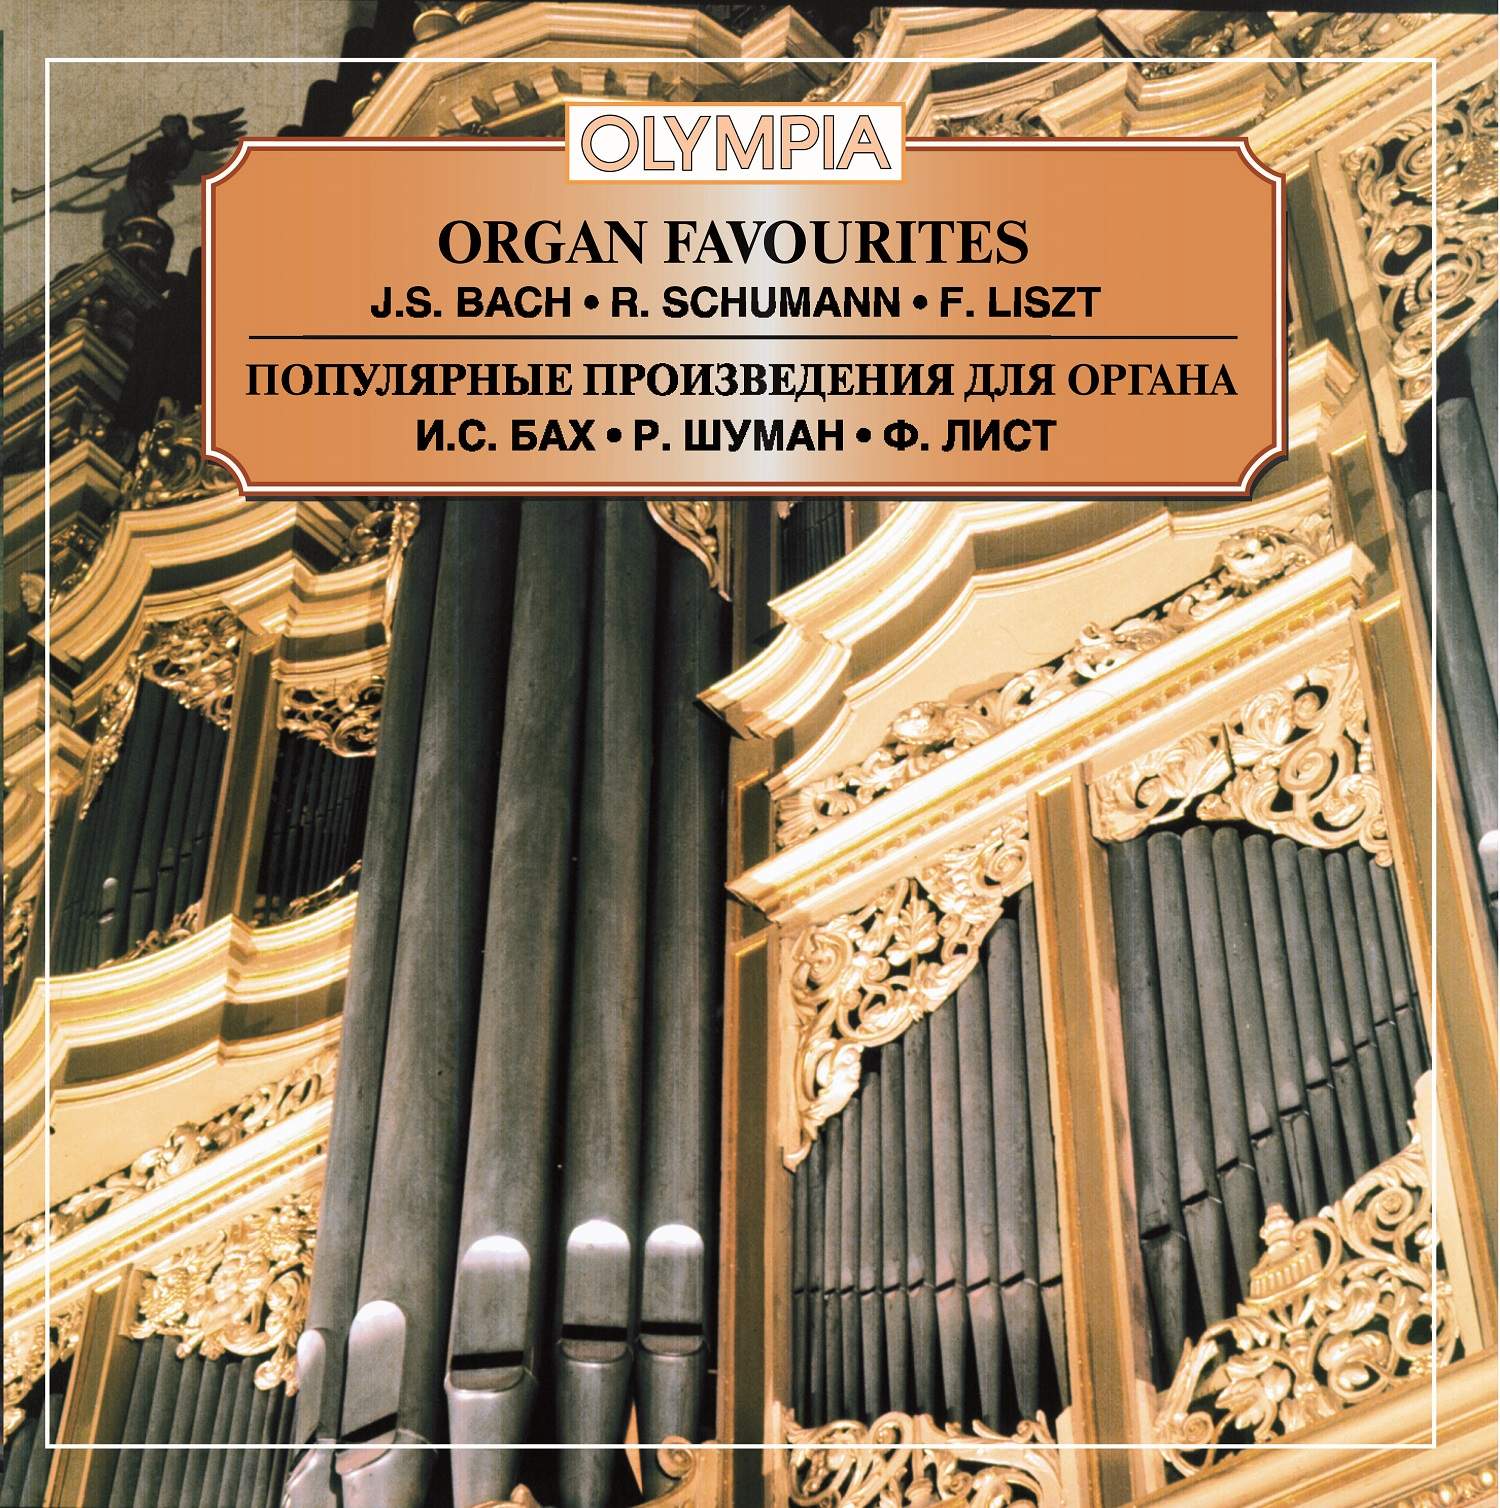 Лист известные произведения. Произведения для органа. Органные произведения Баха. Известные произведения для органа Баха. Самое известное Органное произведение.